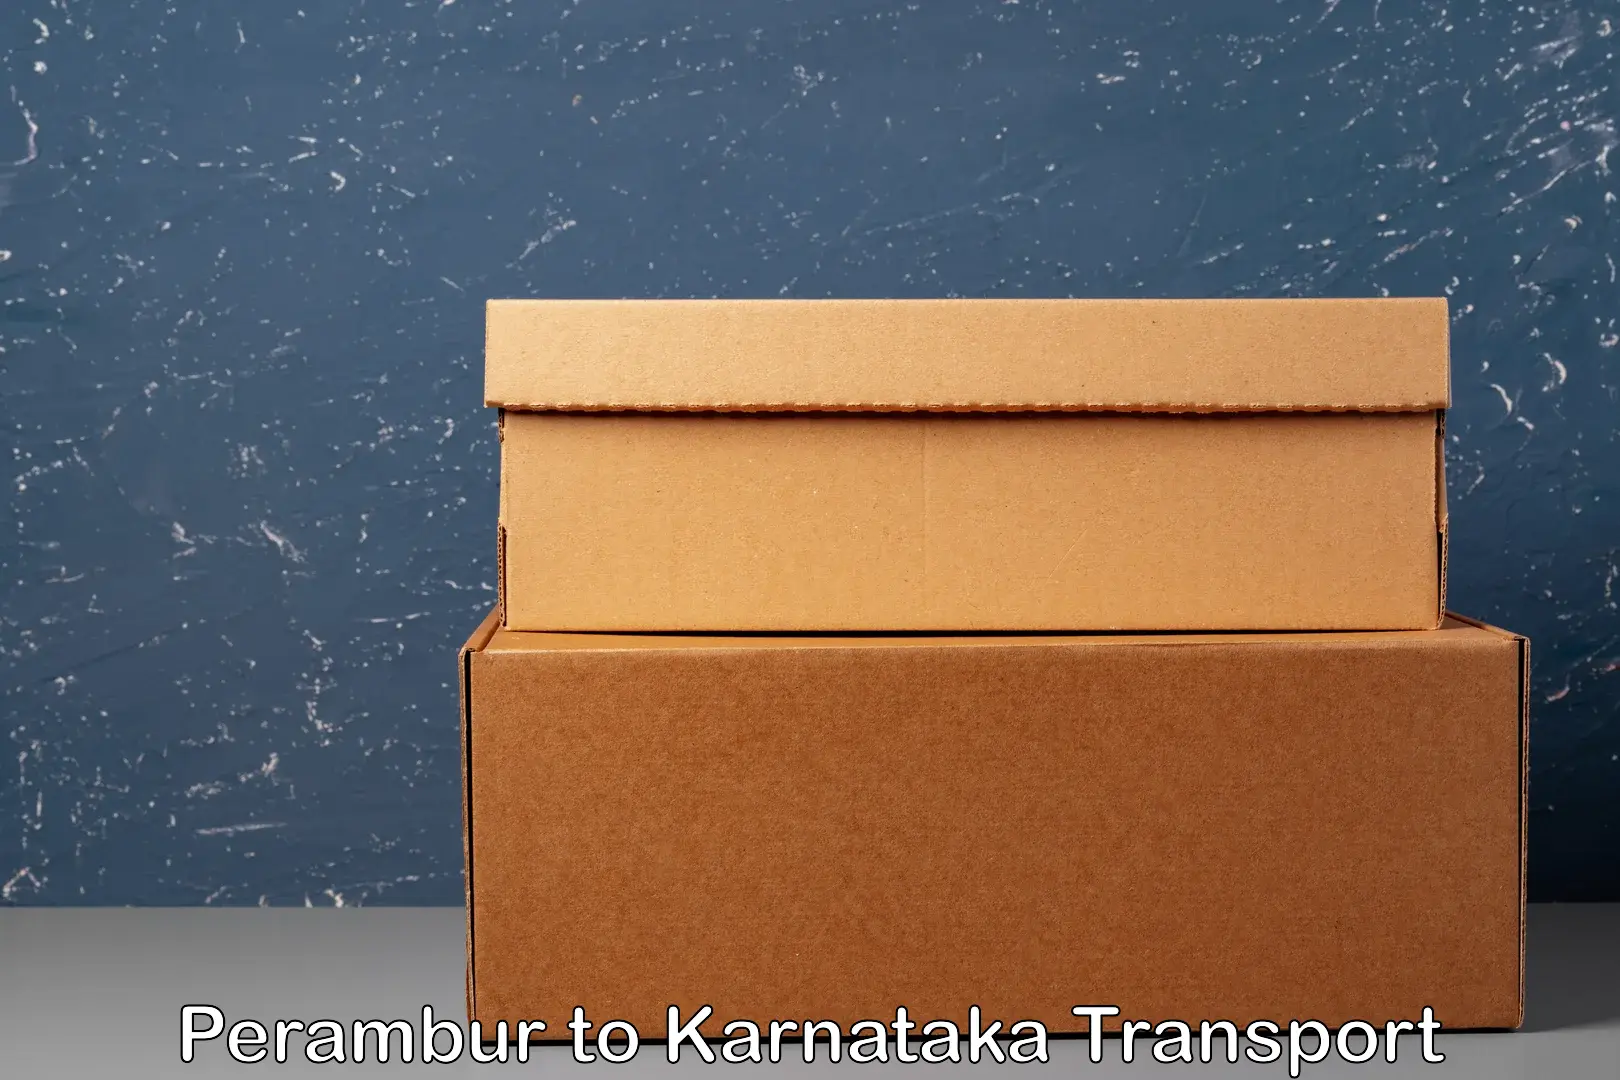 International cargo transportation services in Perambur to Navalgund